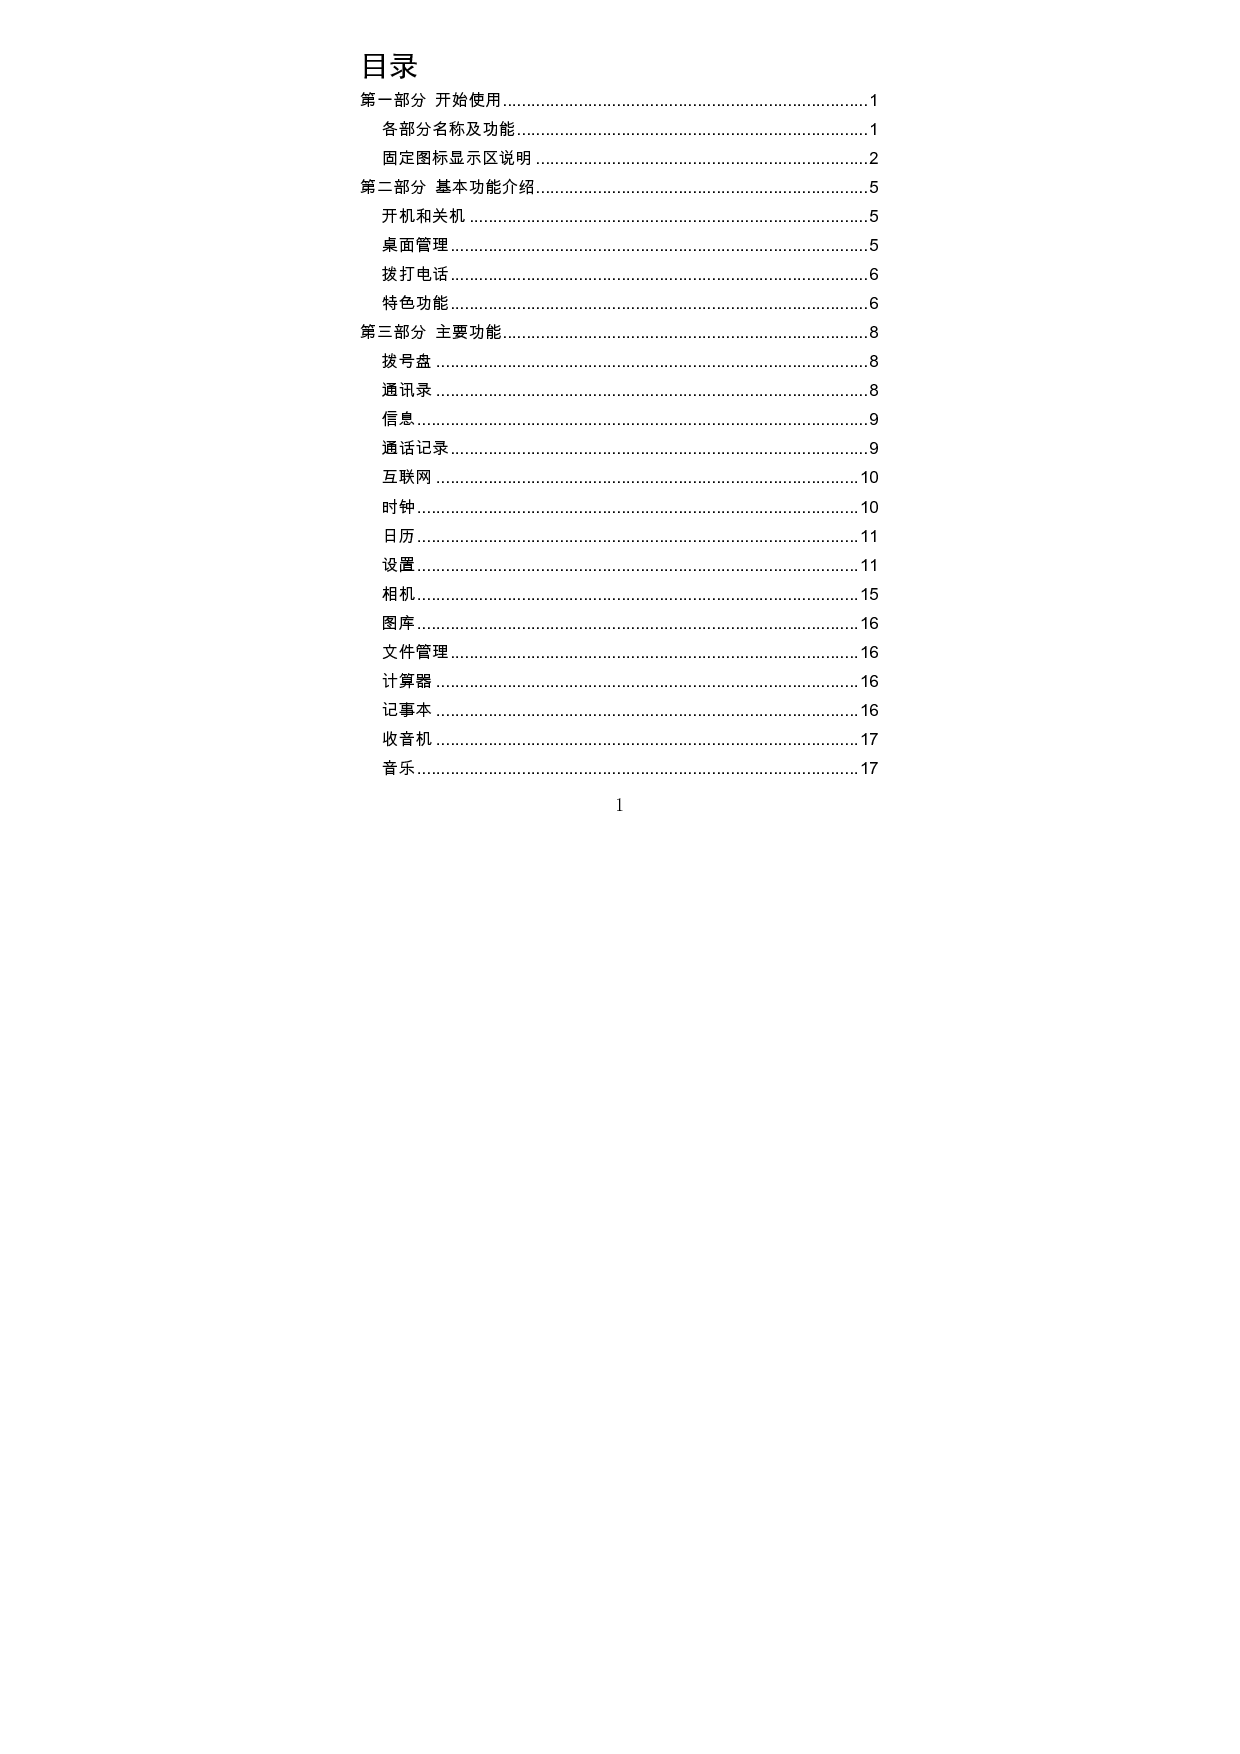 海信 Hisense HS-EG950 用户指南 第1页